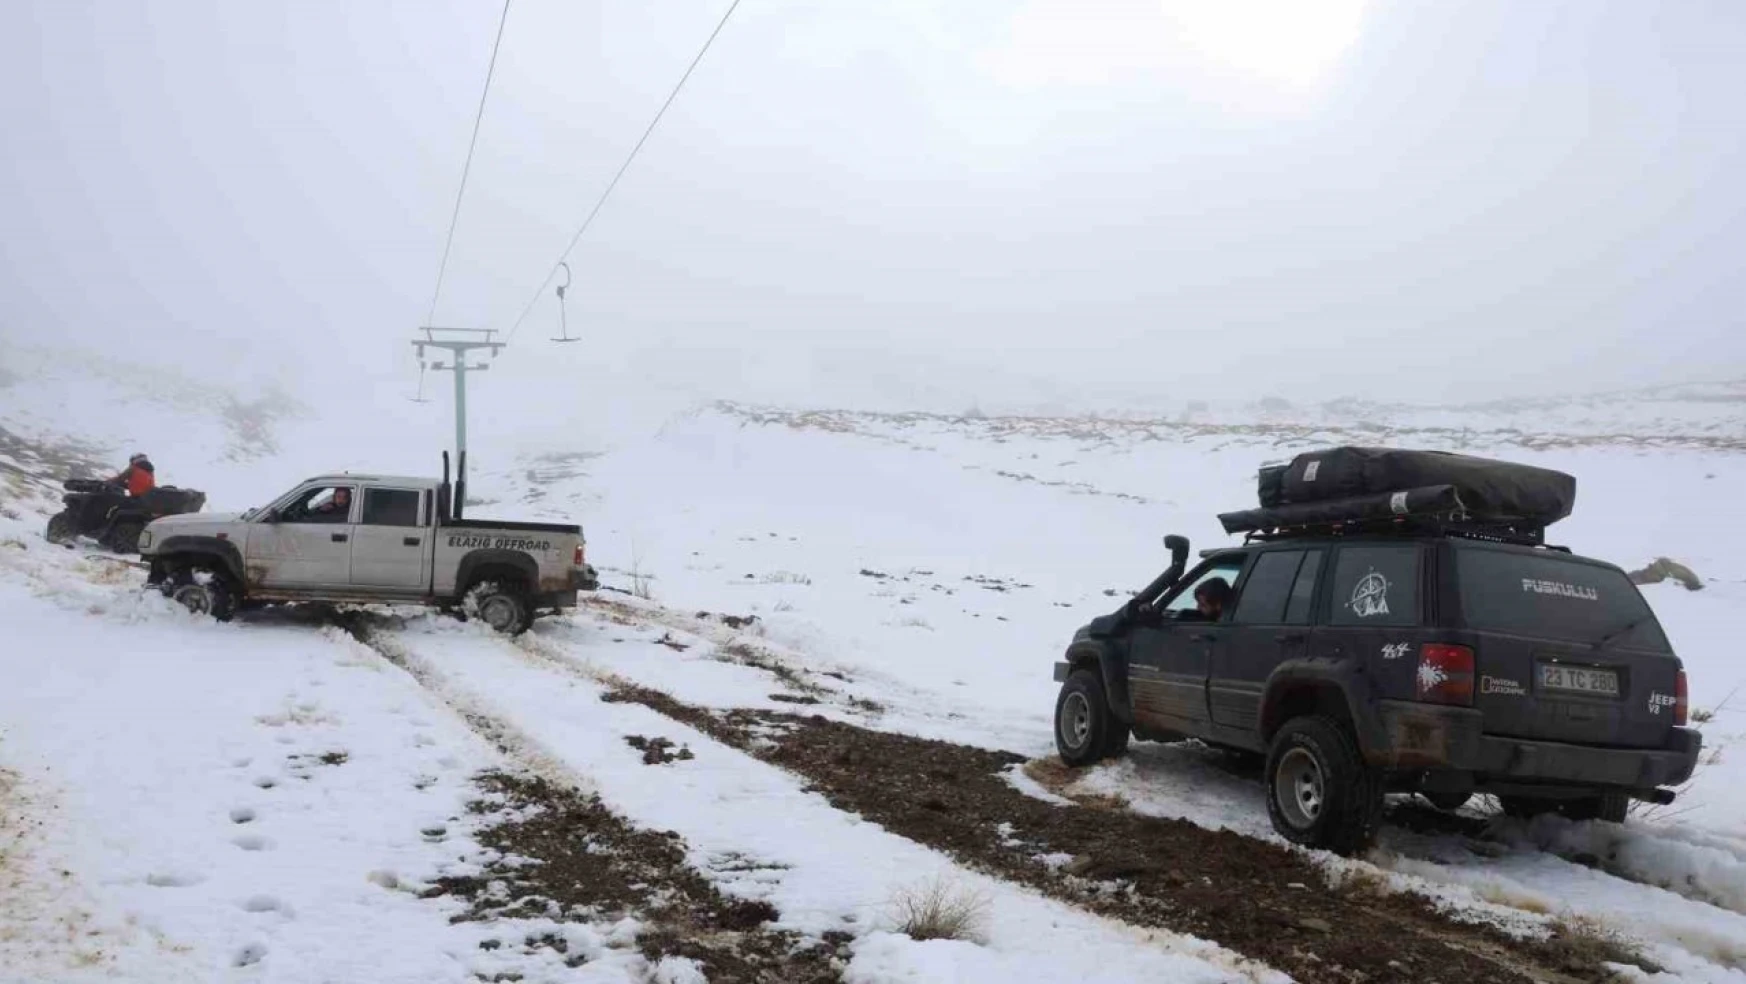 Kar Yağmayan Hazarbaba Dağı, Off Road Tutkunlarının Durağı Oldu